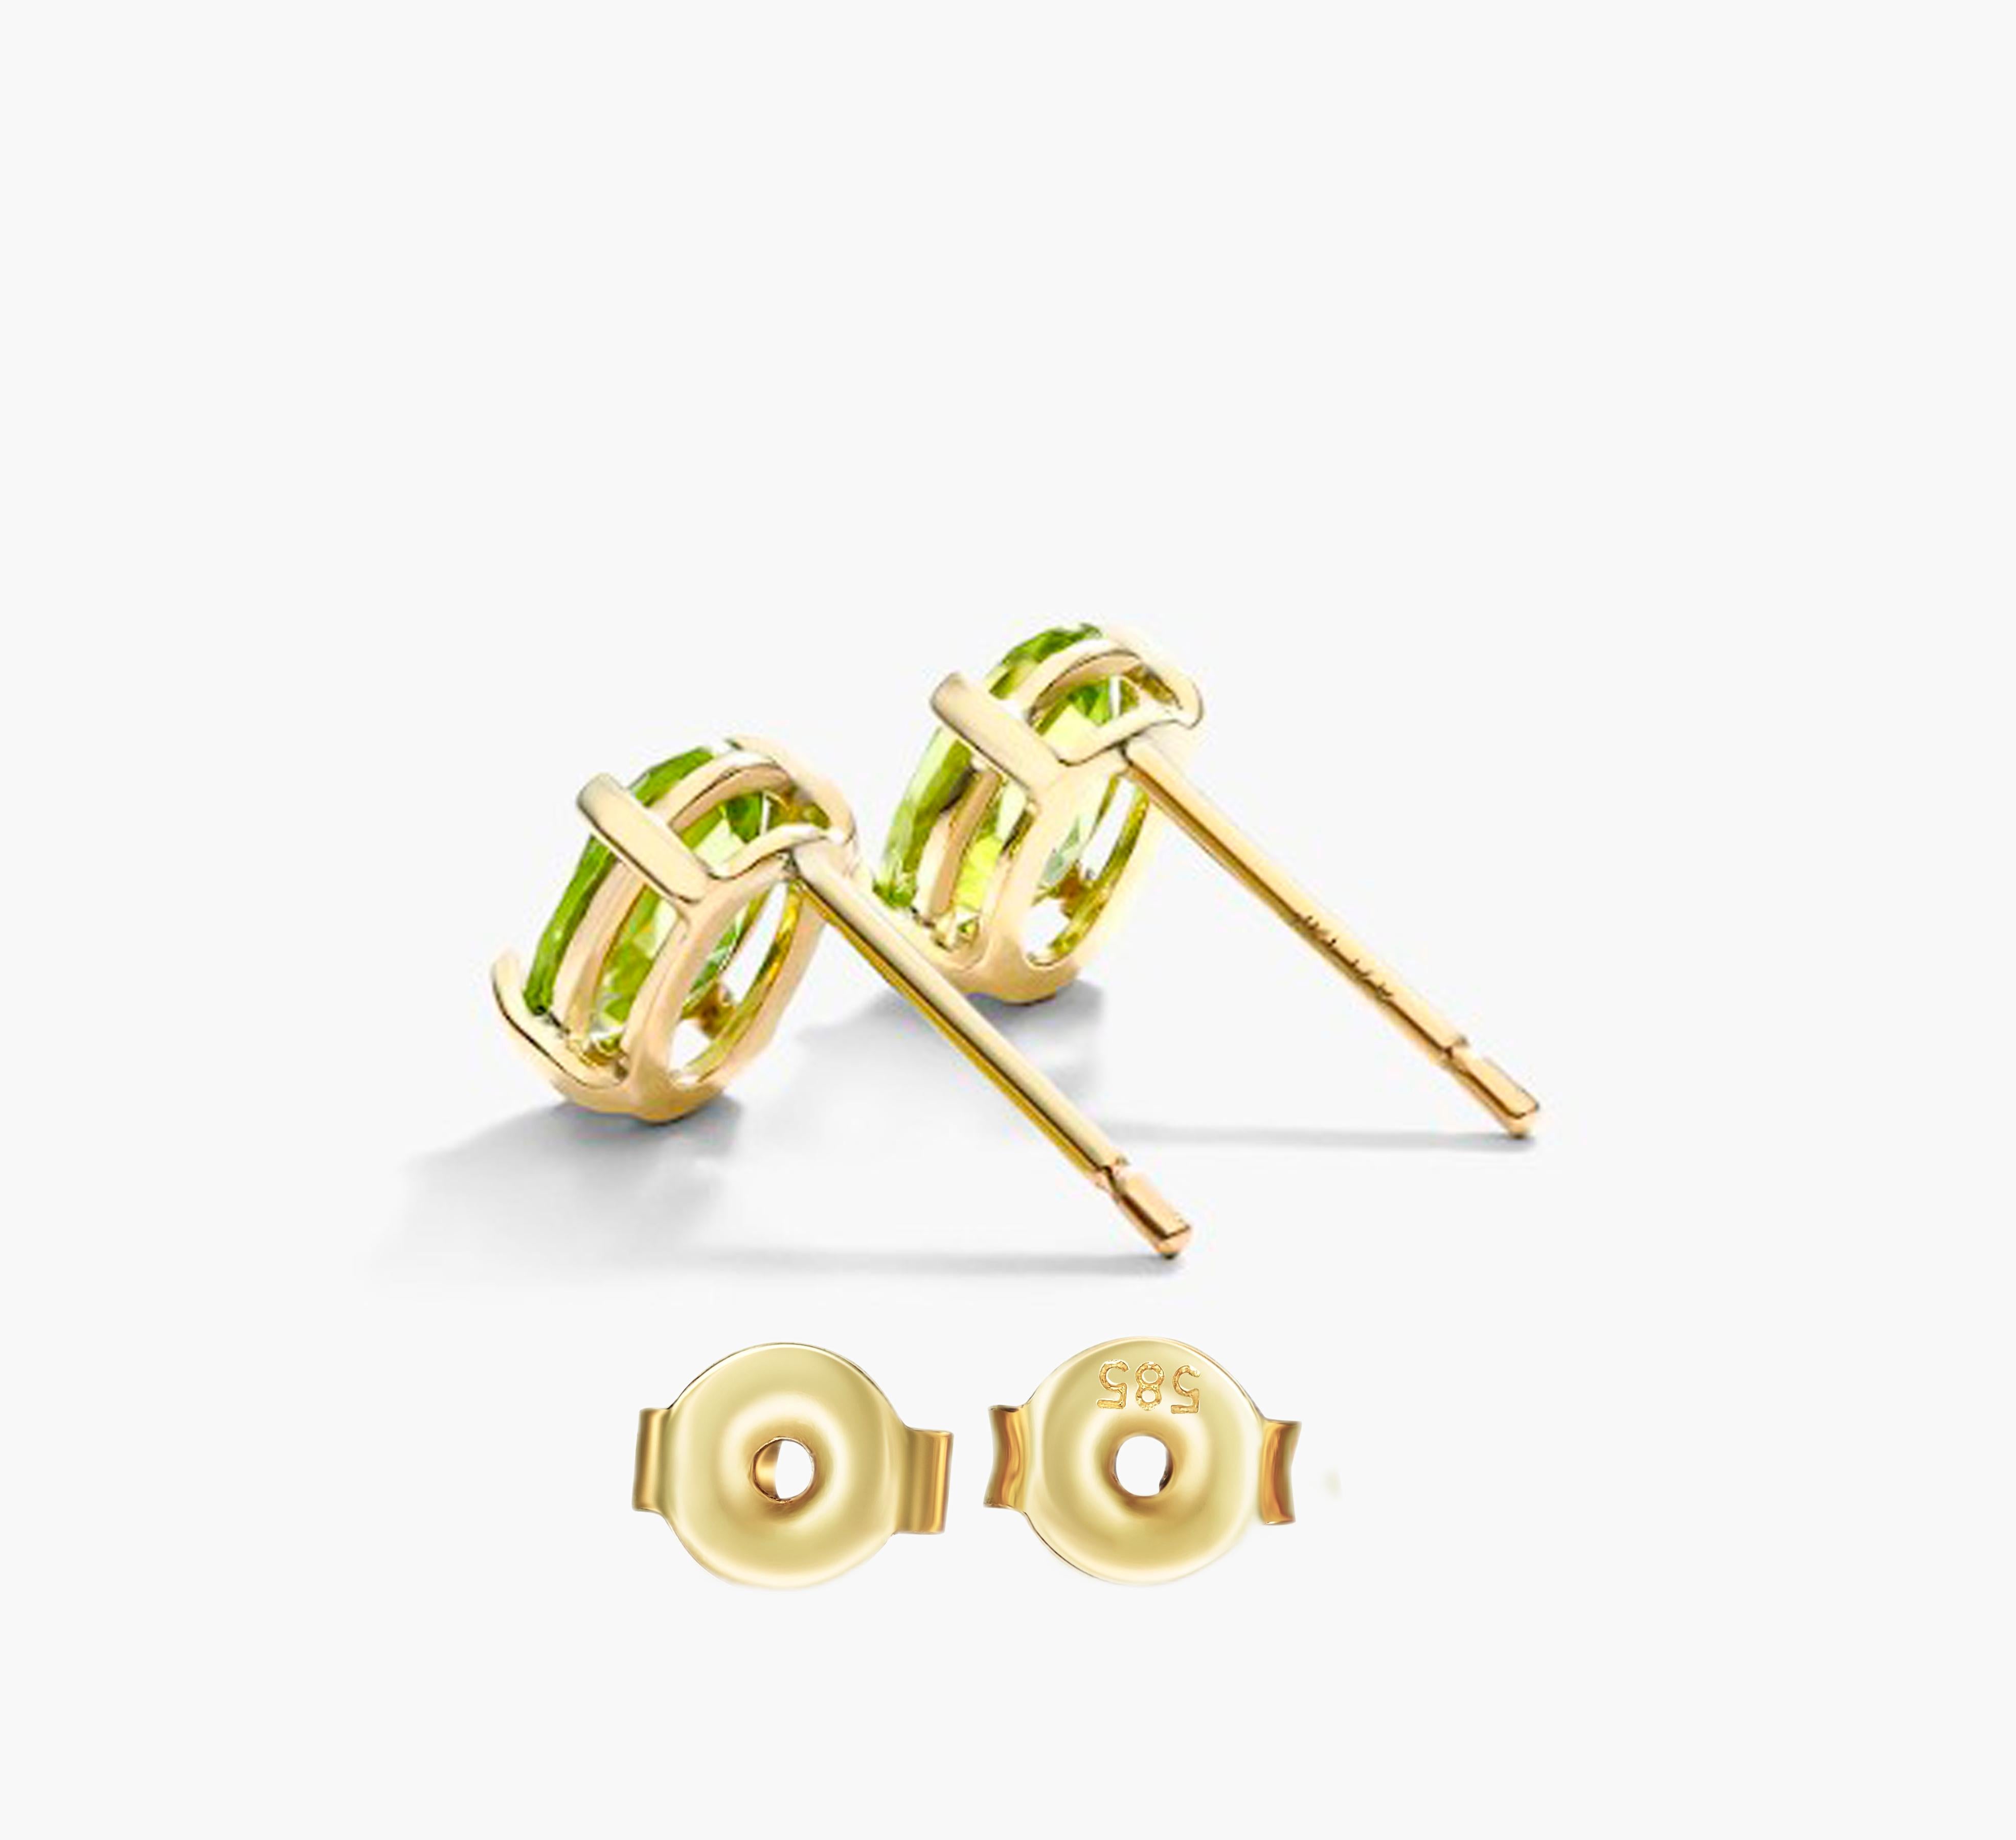 Oval Cut August birthstone peridot 14k gold earrings studs. For Sale